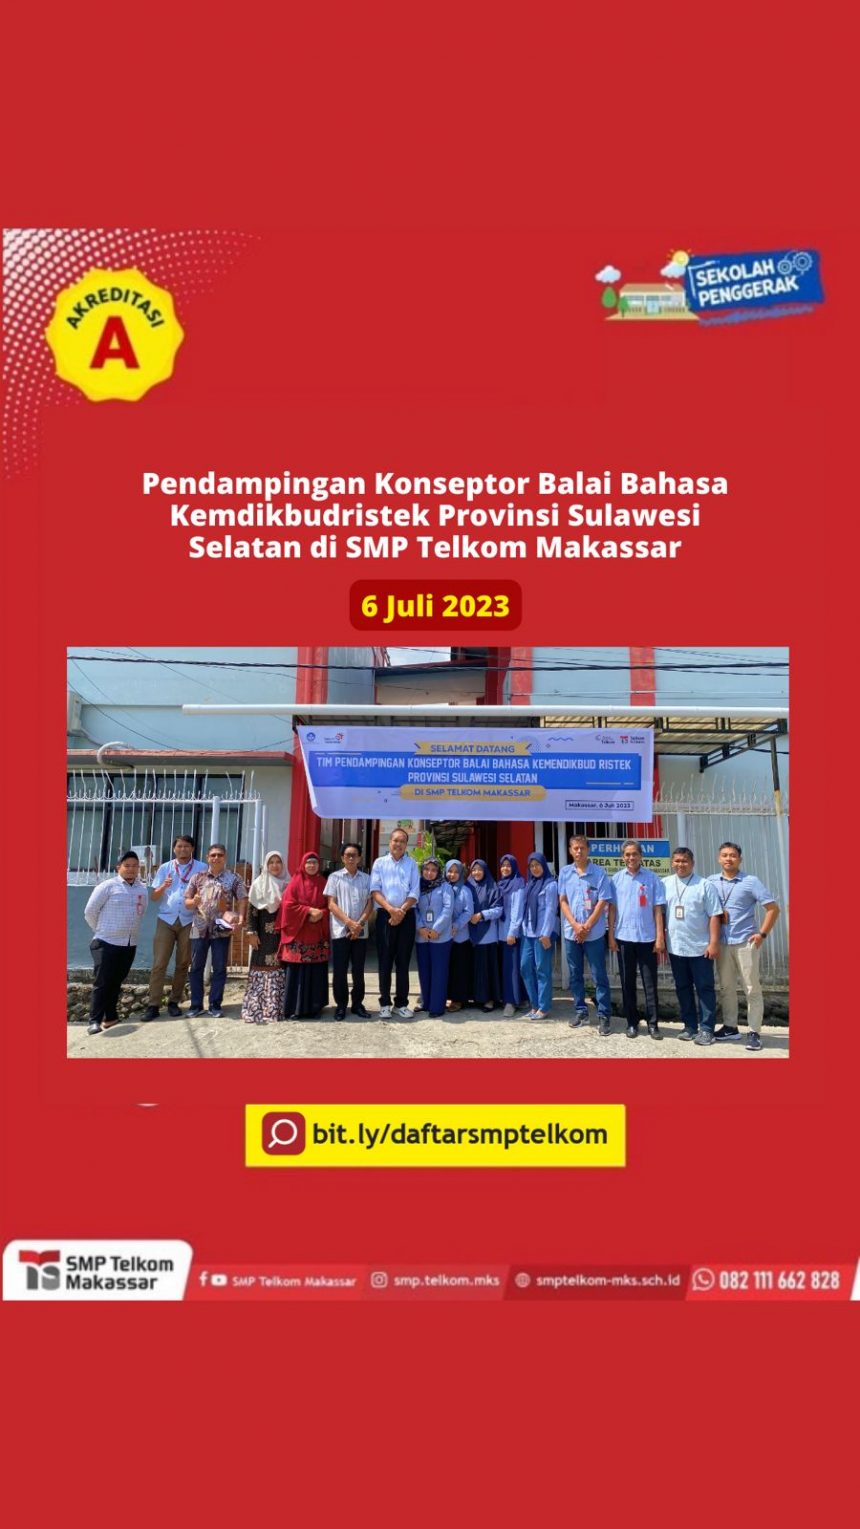 Pendampingan Konseptor Balai Bahasa Kemdikbudristek Provinsi Sulawesi Selatan di SMP Telkom Makassar